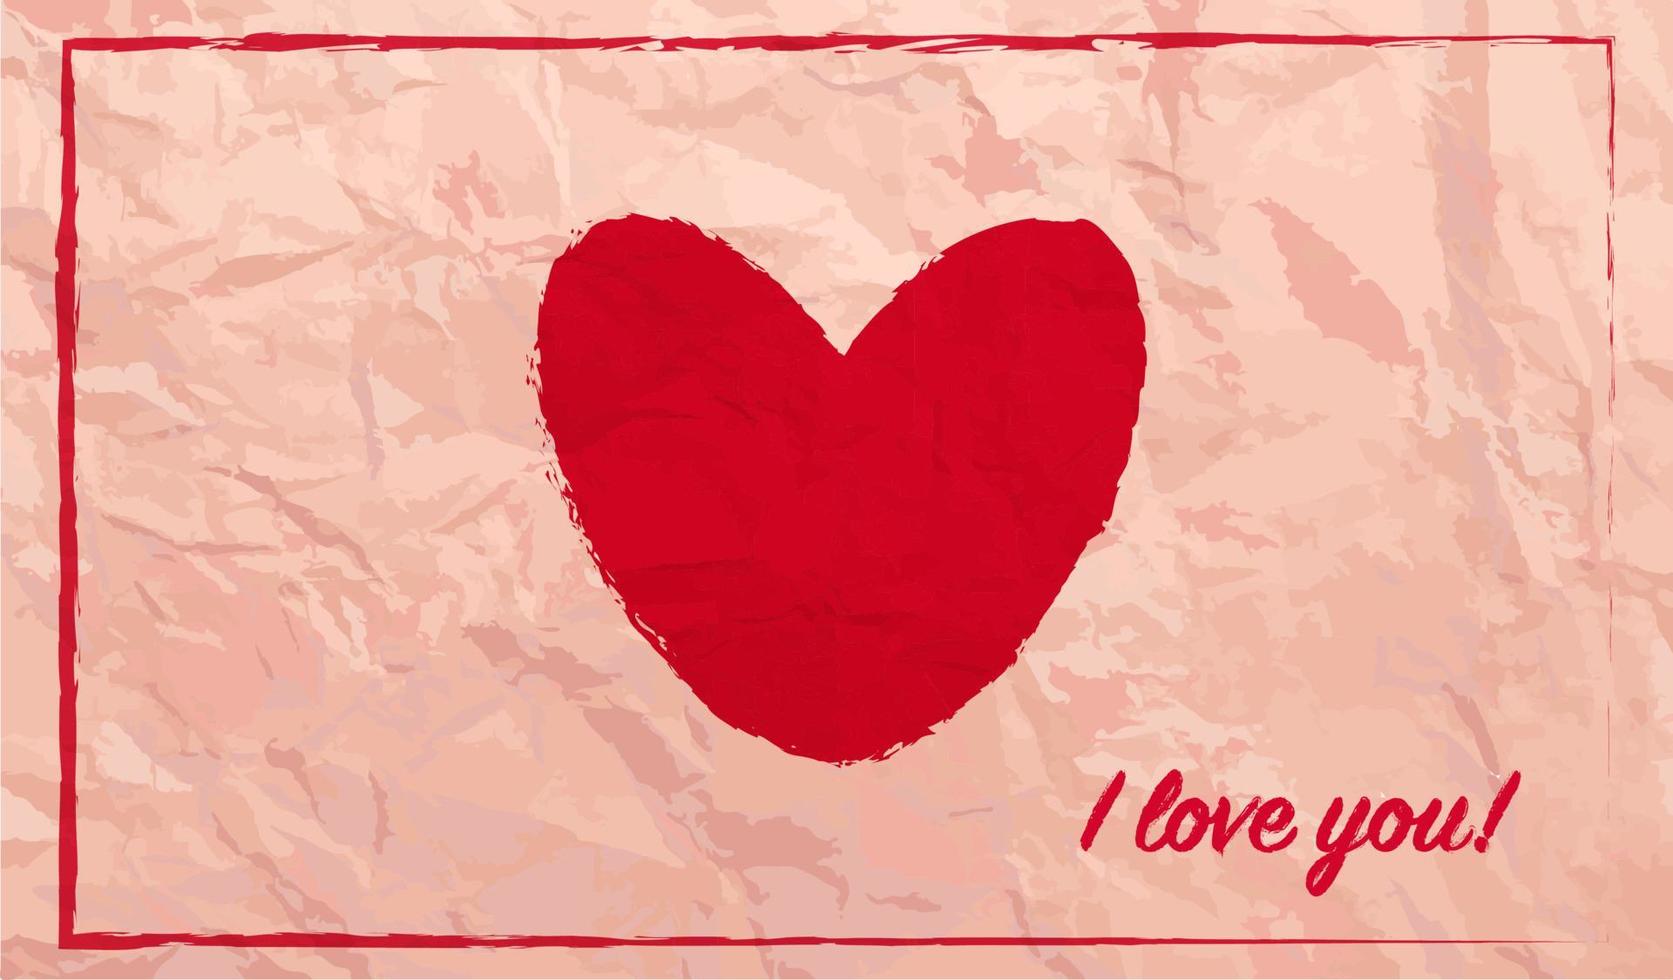 cartão de dia dos namorados de São Valentim com coração vermelho e eu te amo frase, cartão romântico em textura de papel vetorial, convite de férias, coração de tinta vermelha, cartão postal apaixonado. vetor